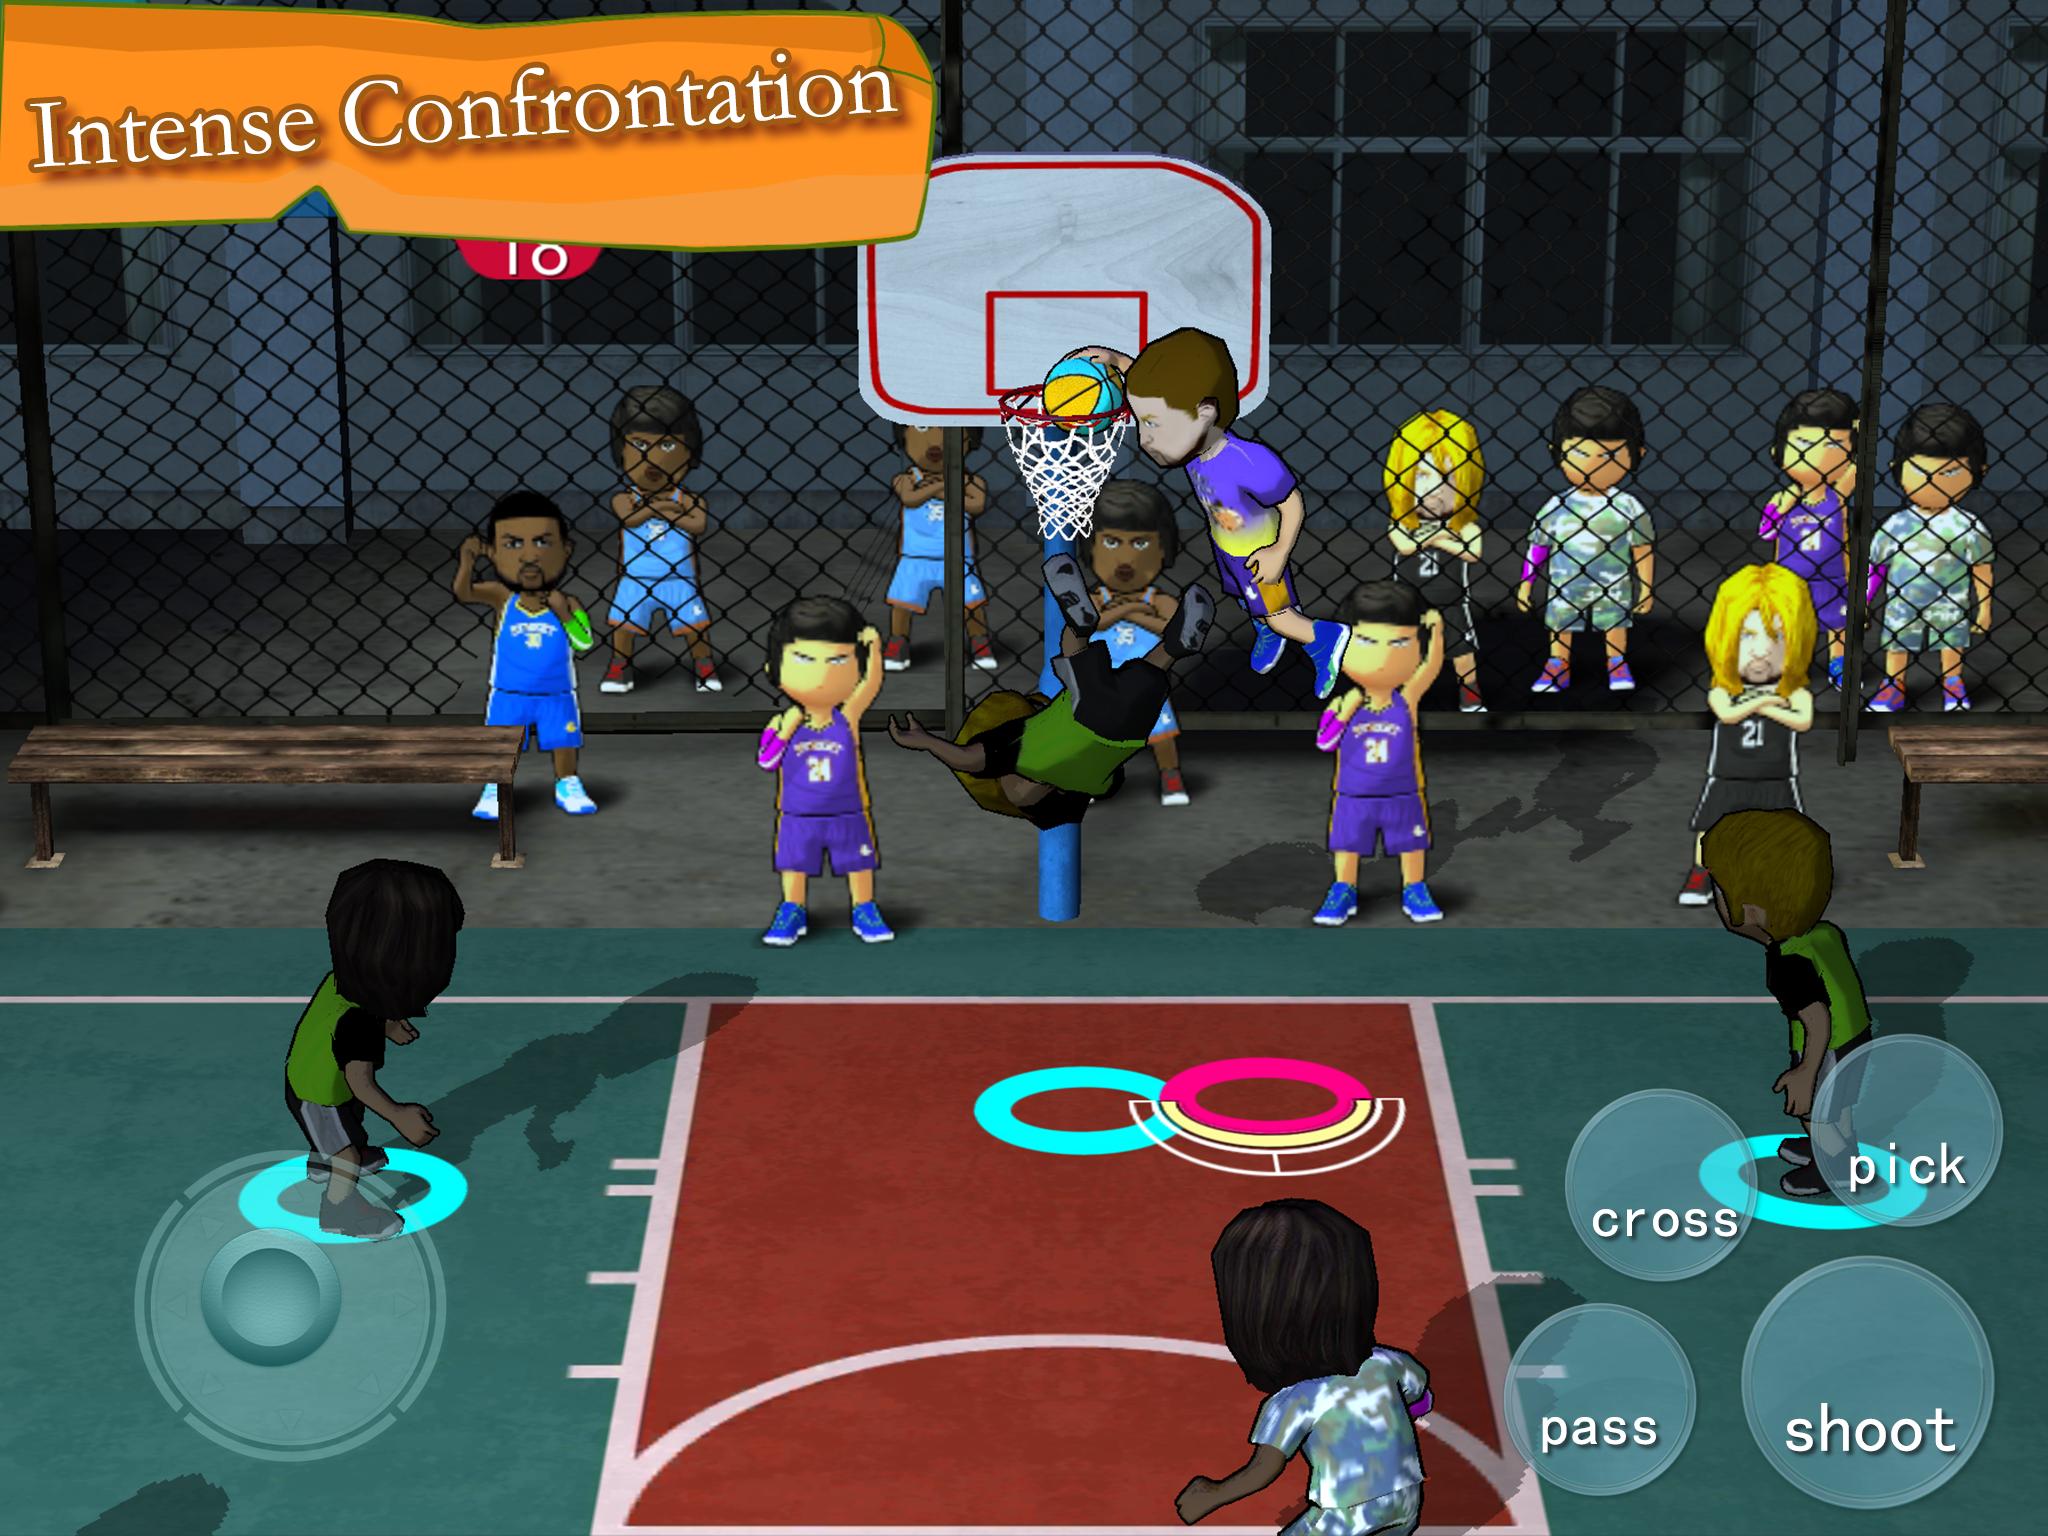 Игра Basketball Association. Street Basketball игра на андроид. Площадка для спортивных игр. Ультимейт стрит баскетбол игра.